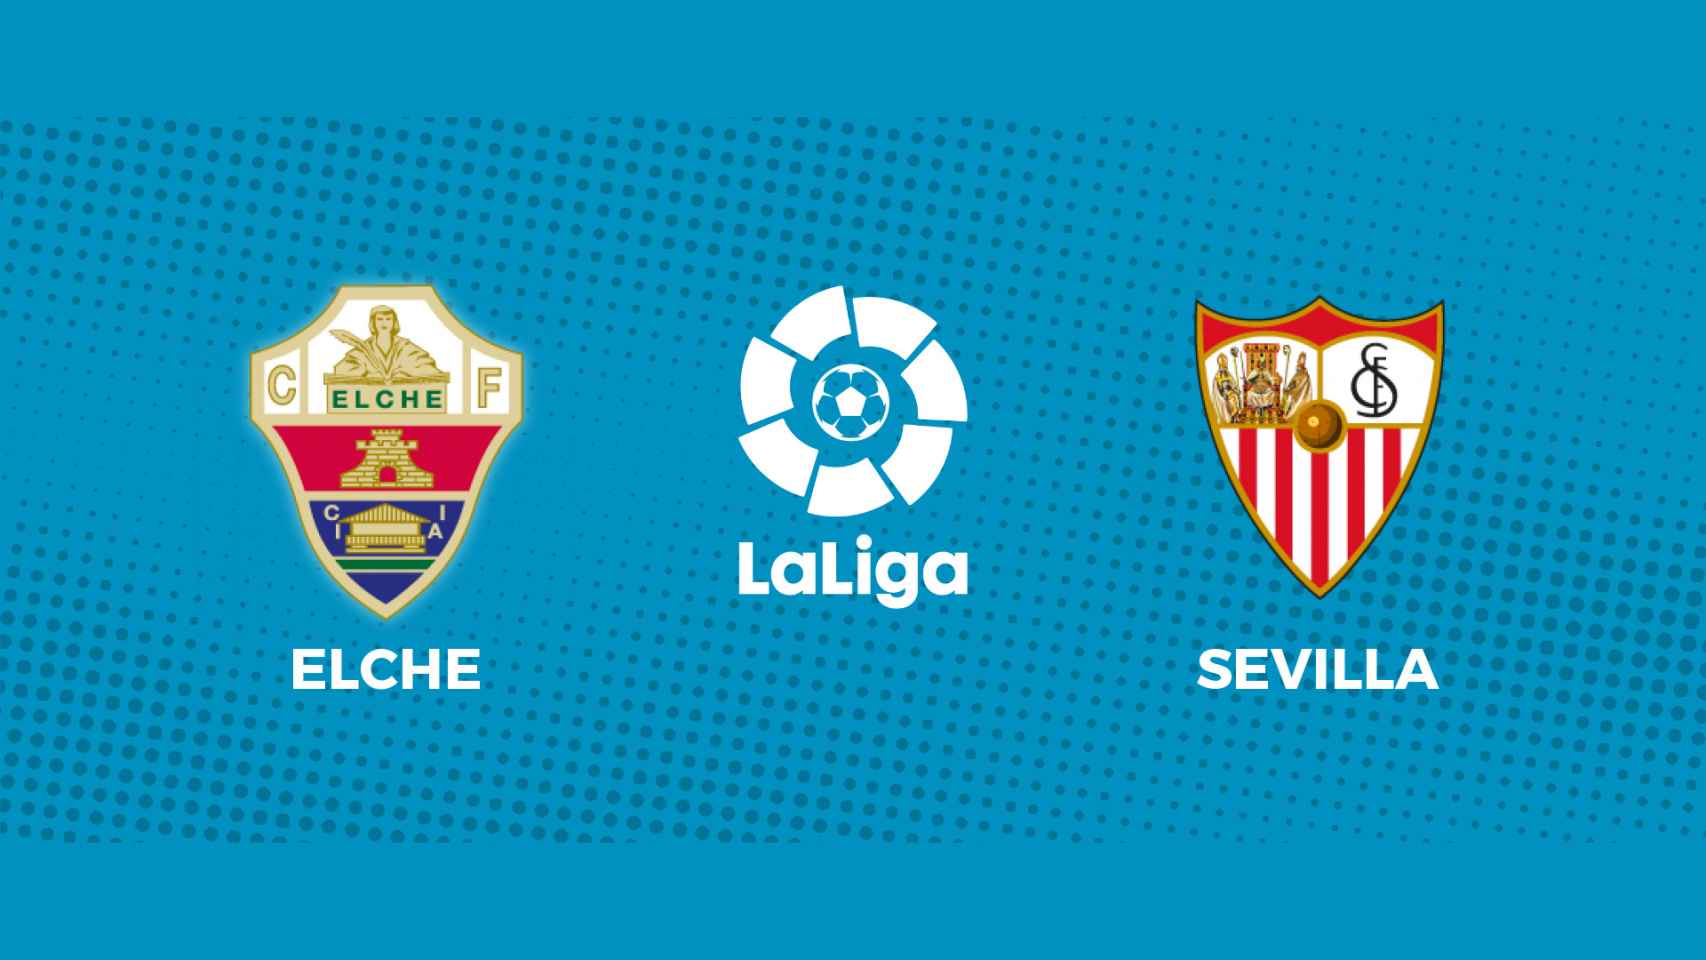 Elche - Sevilla, La Liga en directo